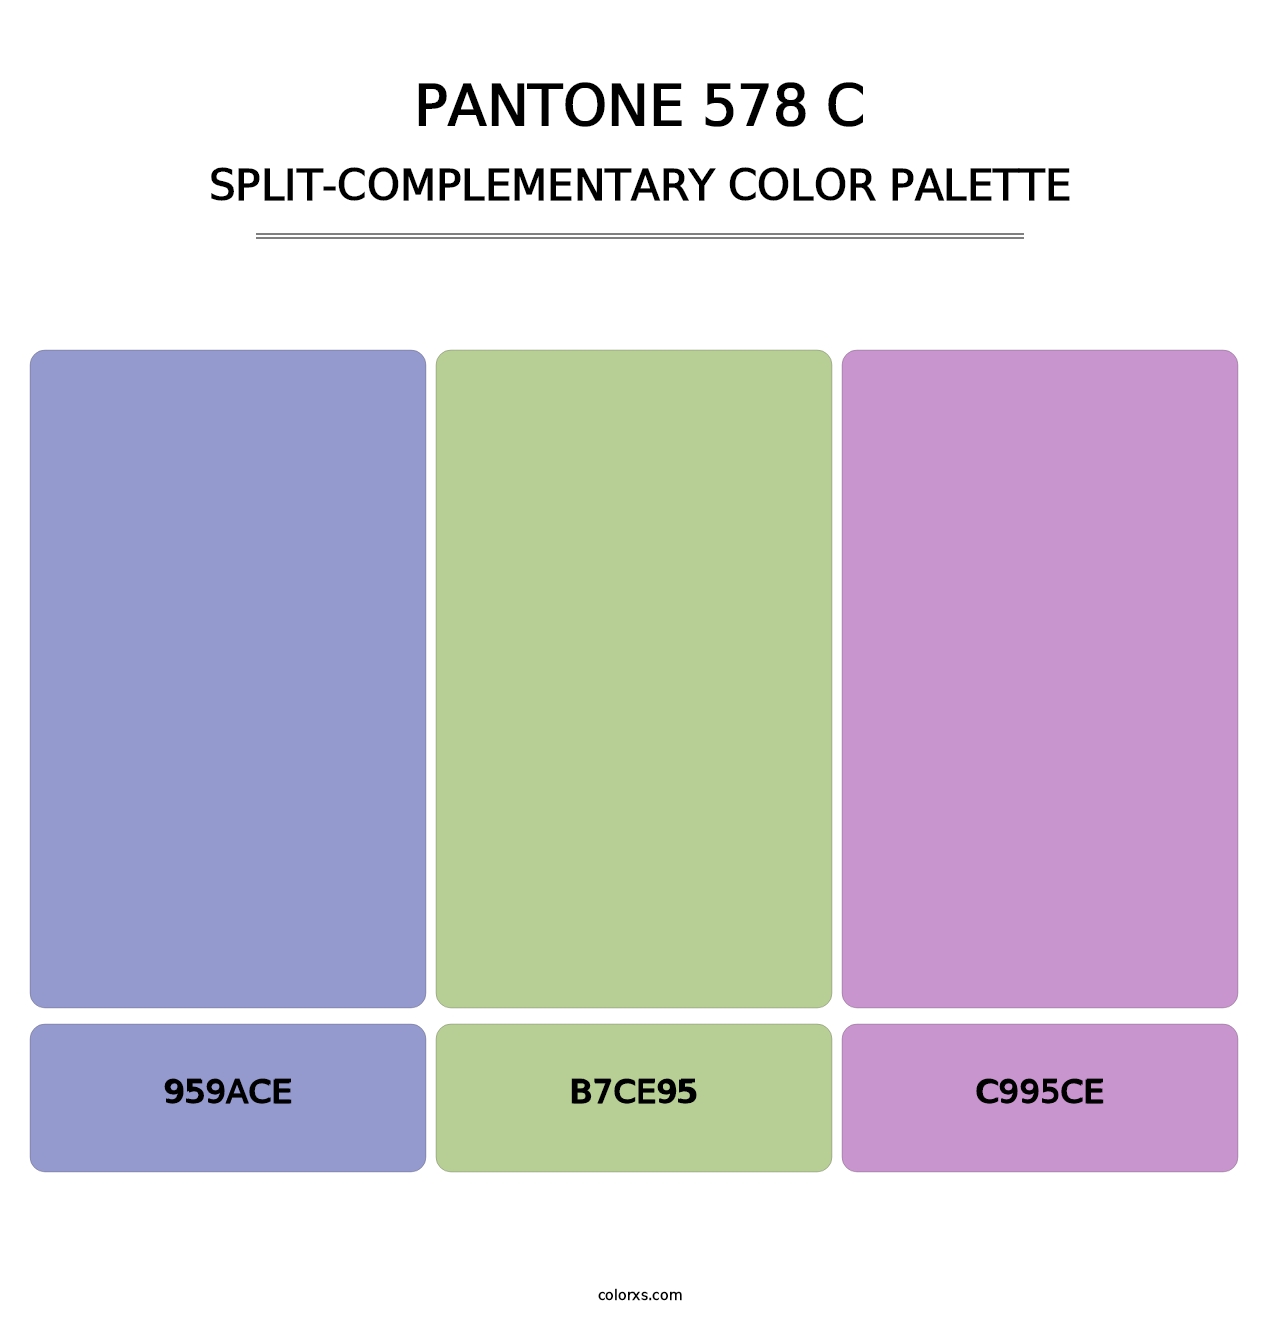 PANTONE 578 C - Split-Complementary Color Palette